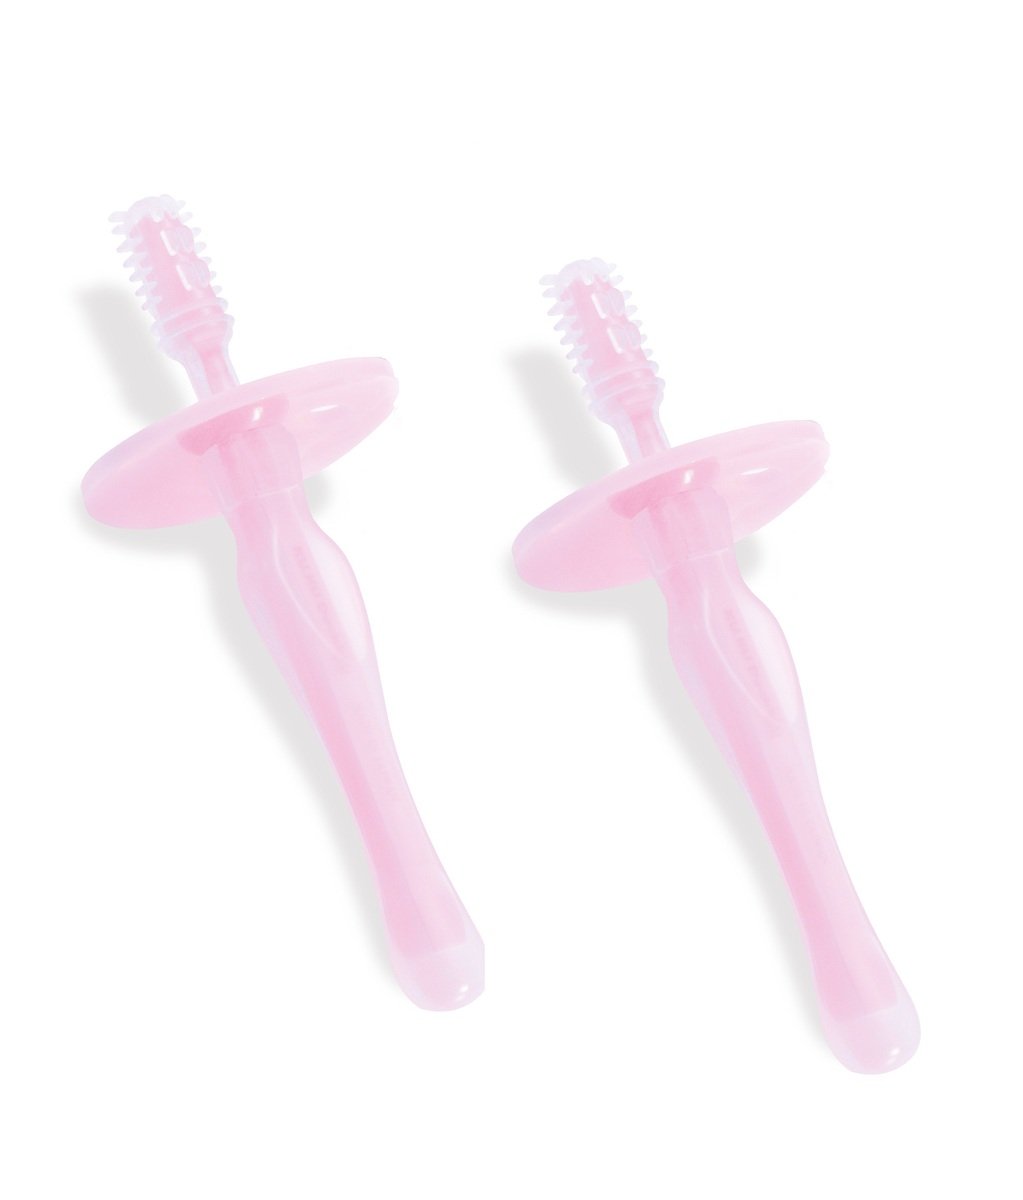 KUKU 幼兒學習矽膠牙刷組 - 2入/粉紅色